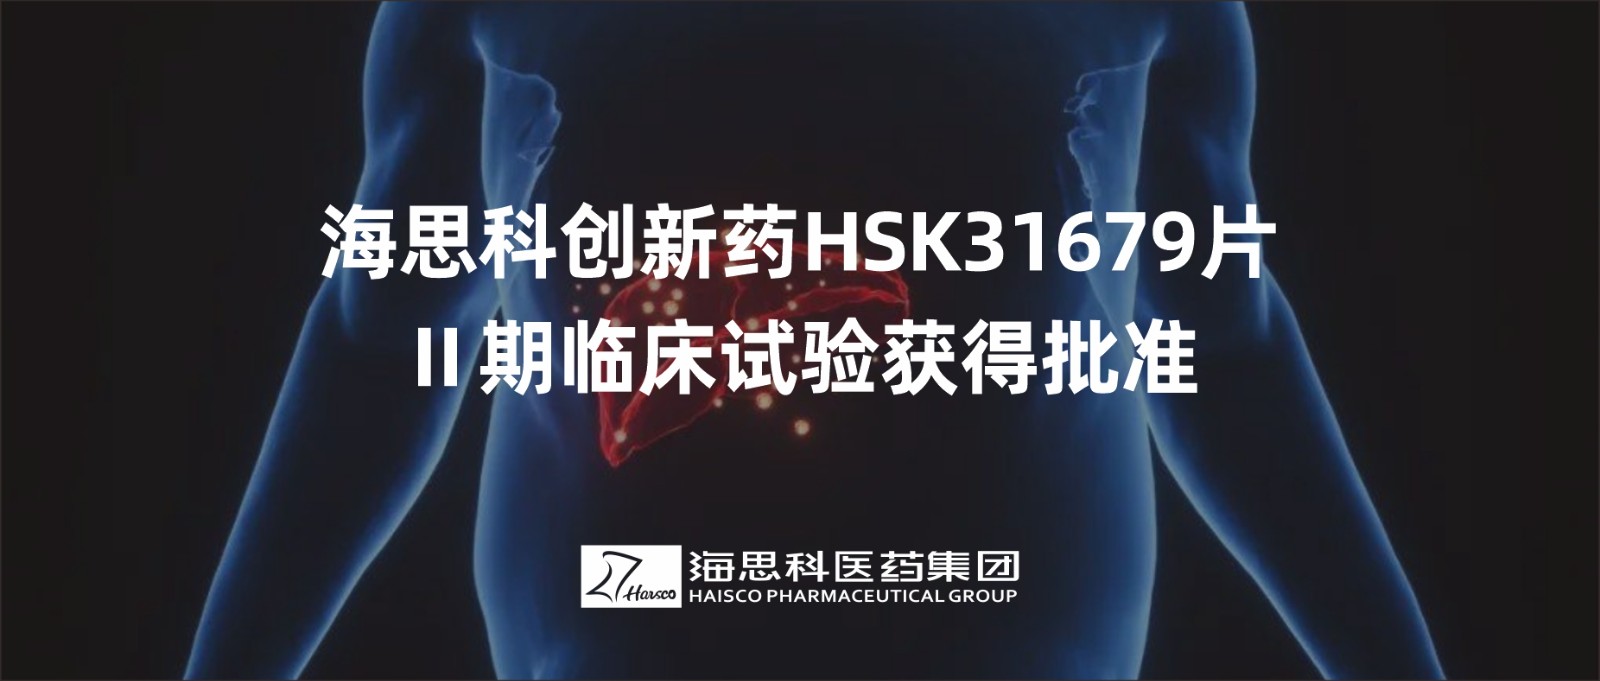 海思科创新药HSK31679片Ⅱ期临床试验获得批准